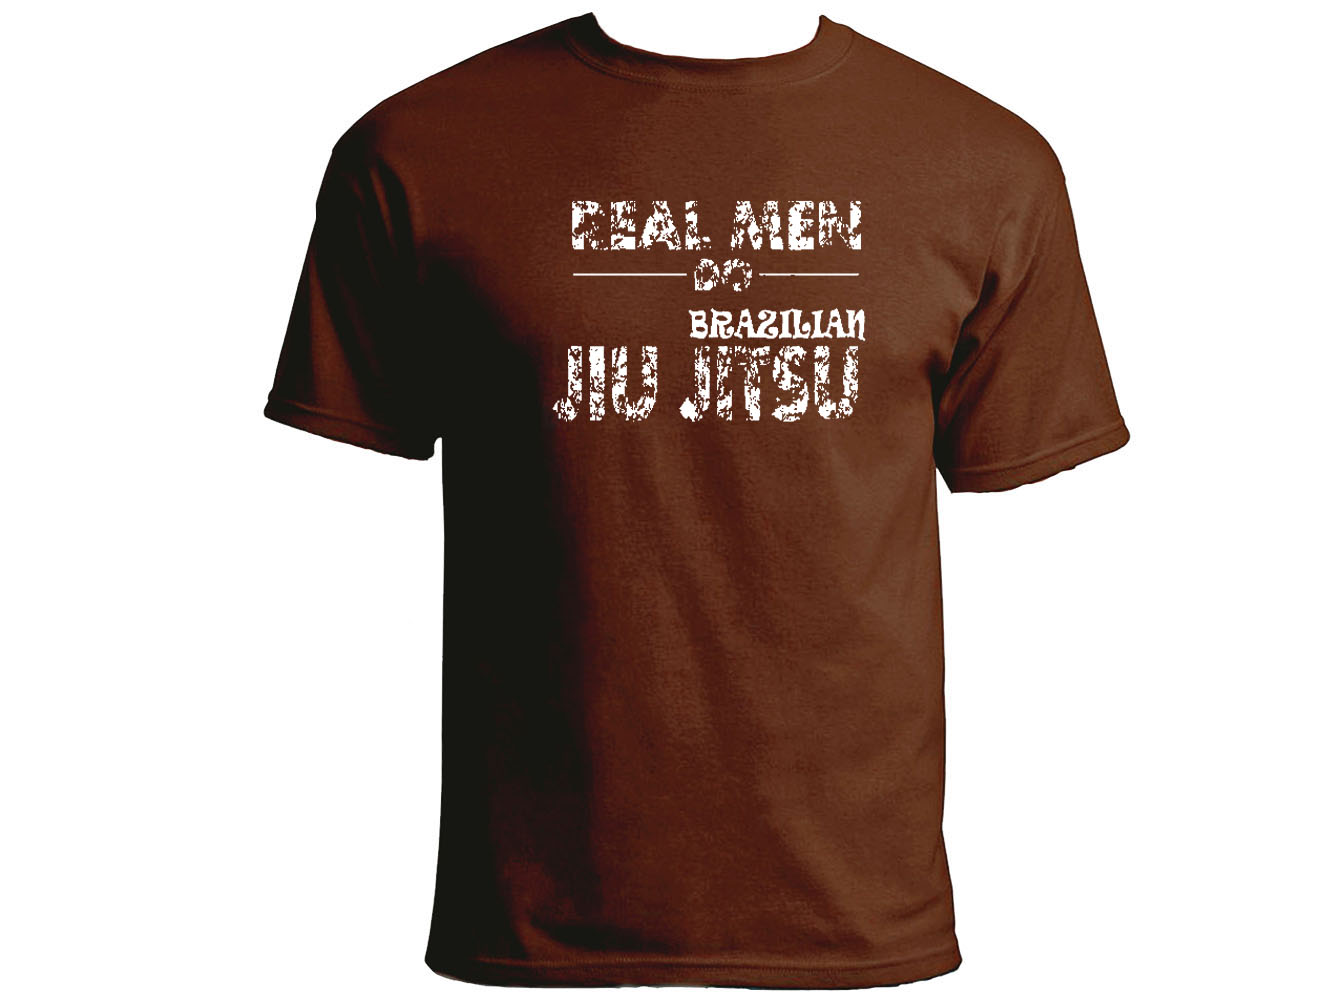 Real men do Brazilian Jiu jitsu BJJ brown t-shirt